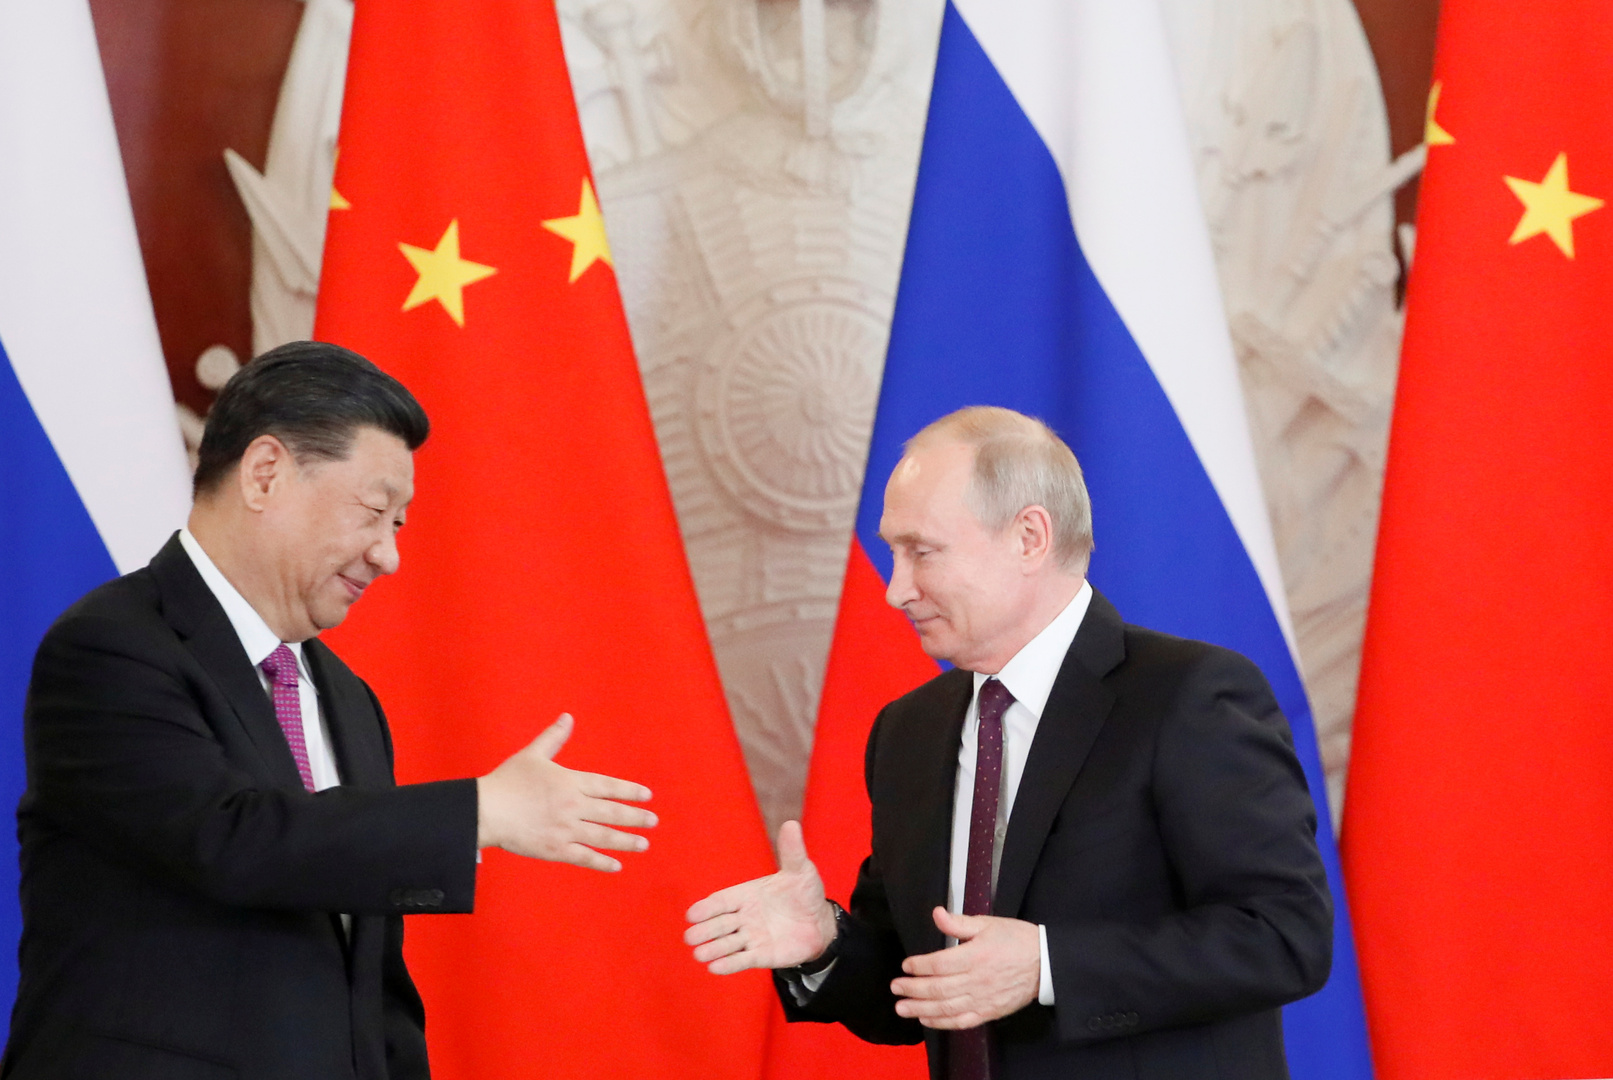 بوتين ينتقد محاولات الولايات المتحدة اتهام الصين بالتضليل بشأن جائحة كورونا